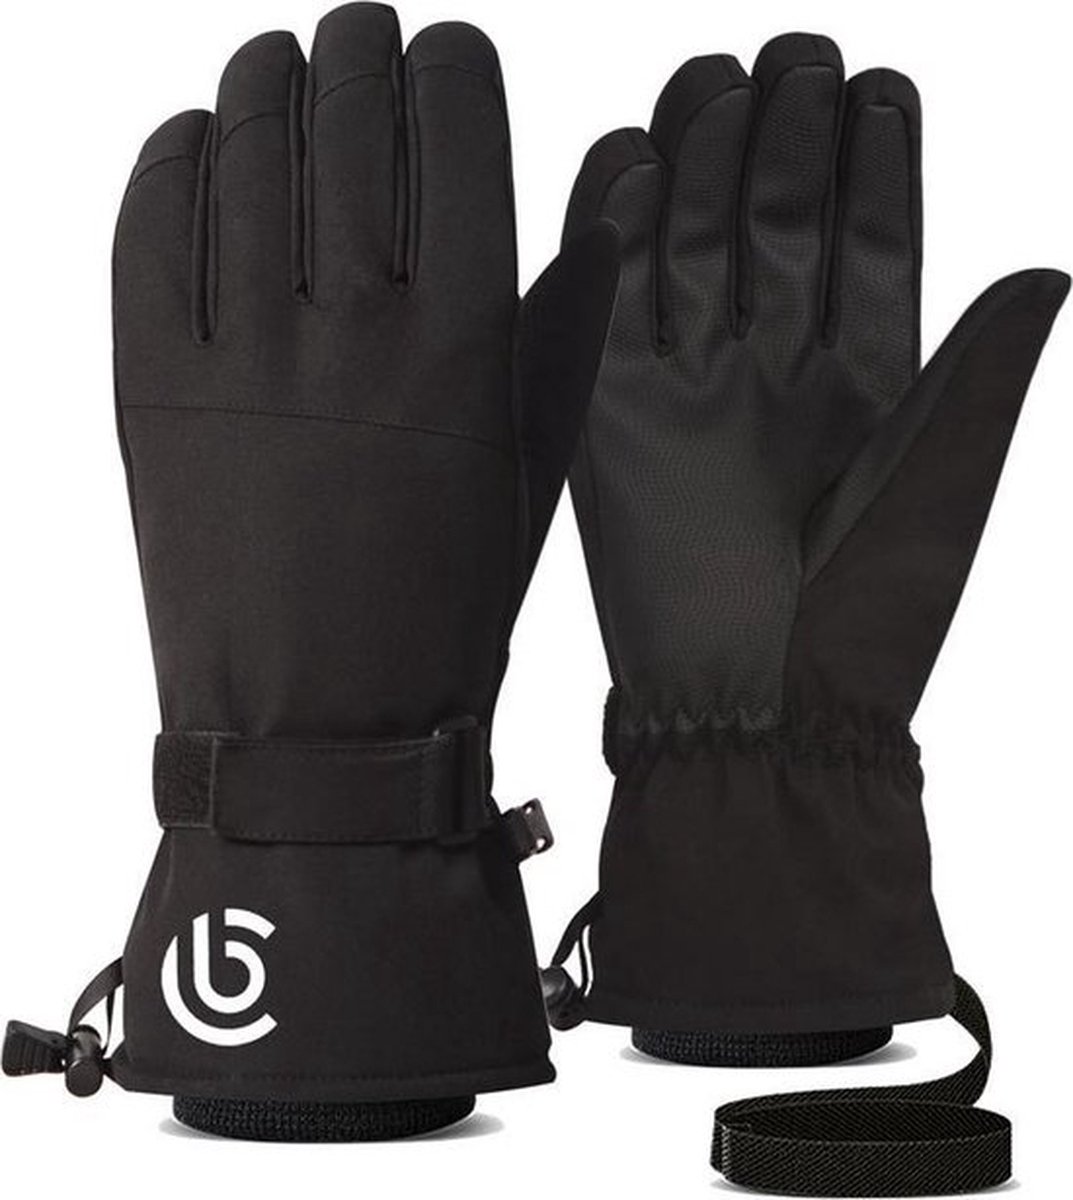 Ski handschoenen - Zwart - Maat XL